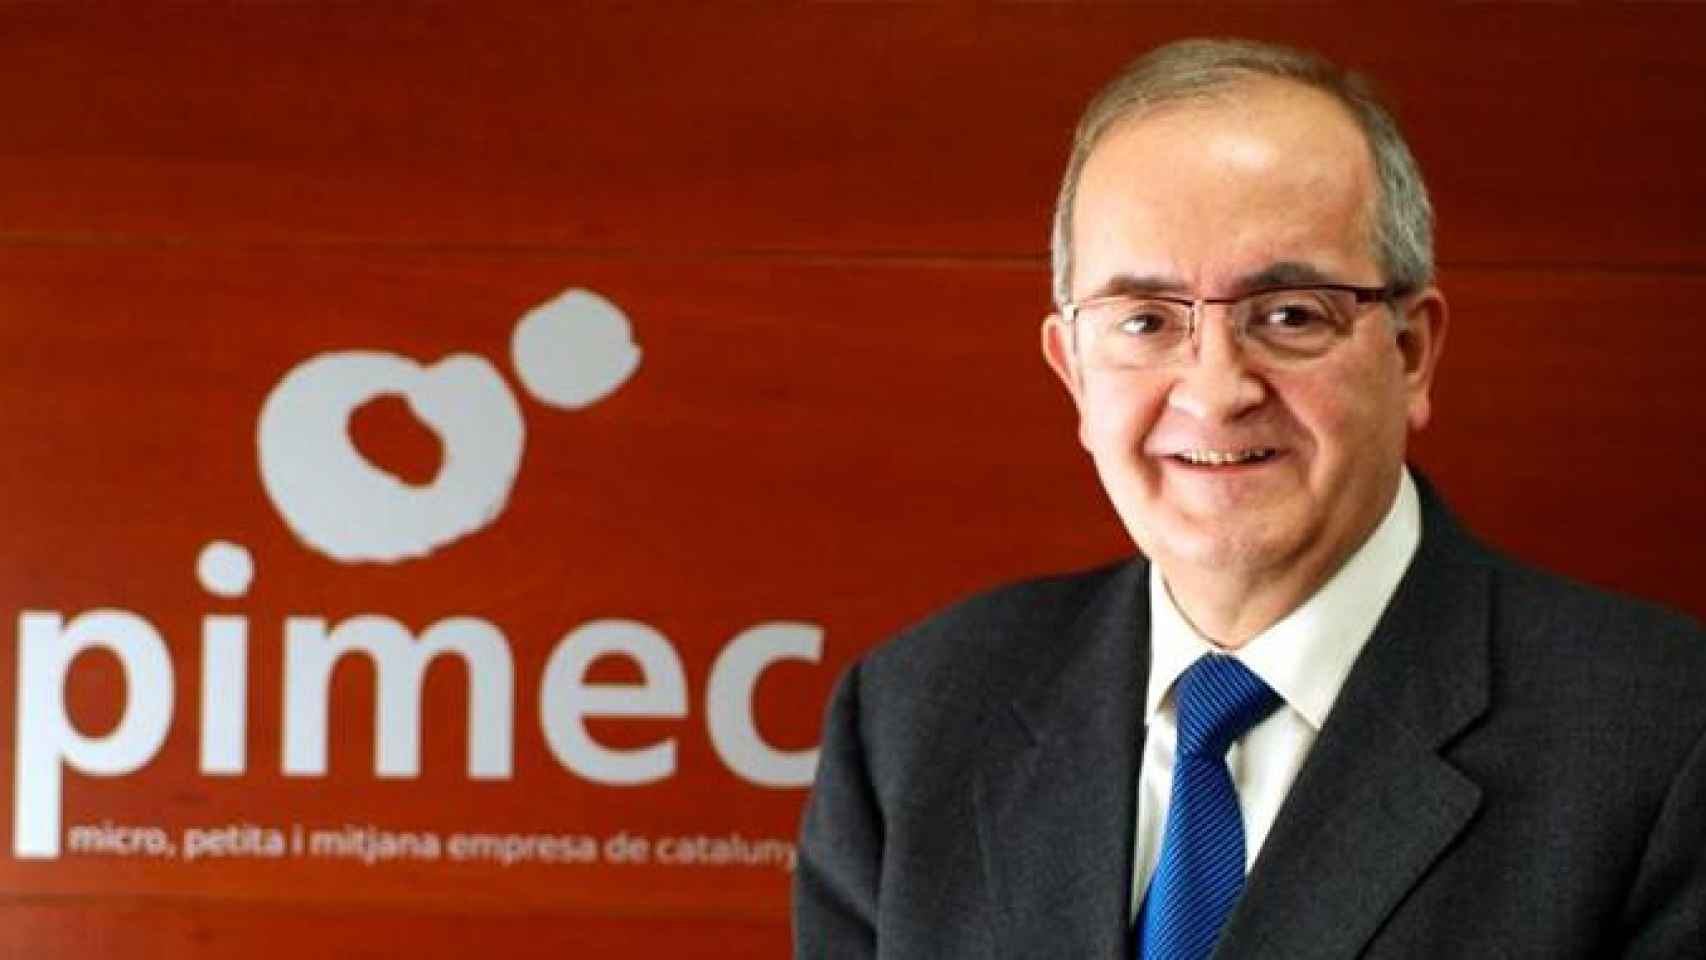 El presidente de Pimec, Josep González / PIMEC